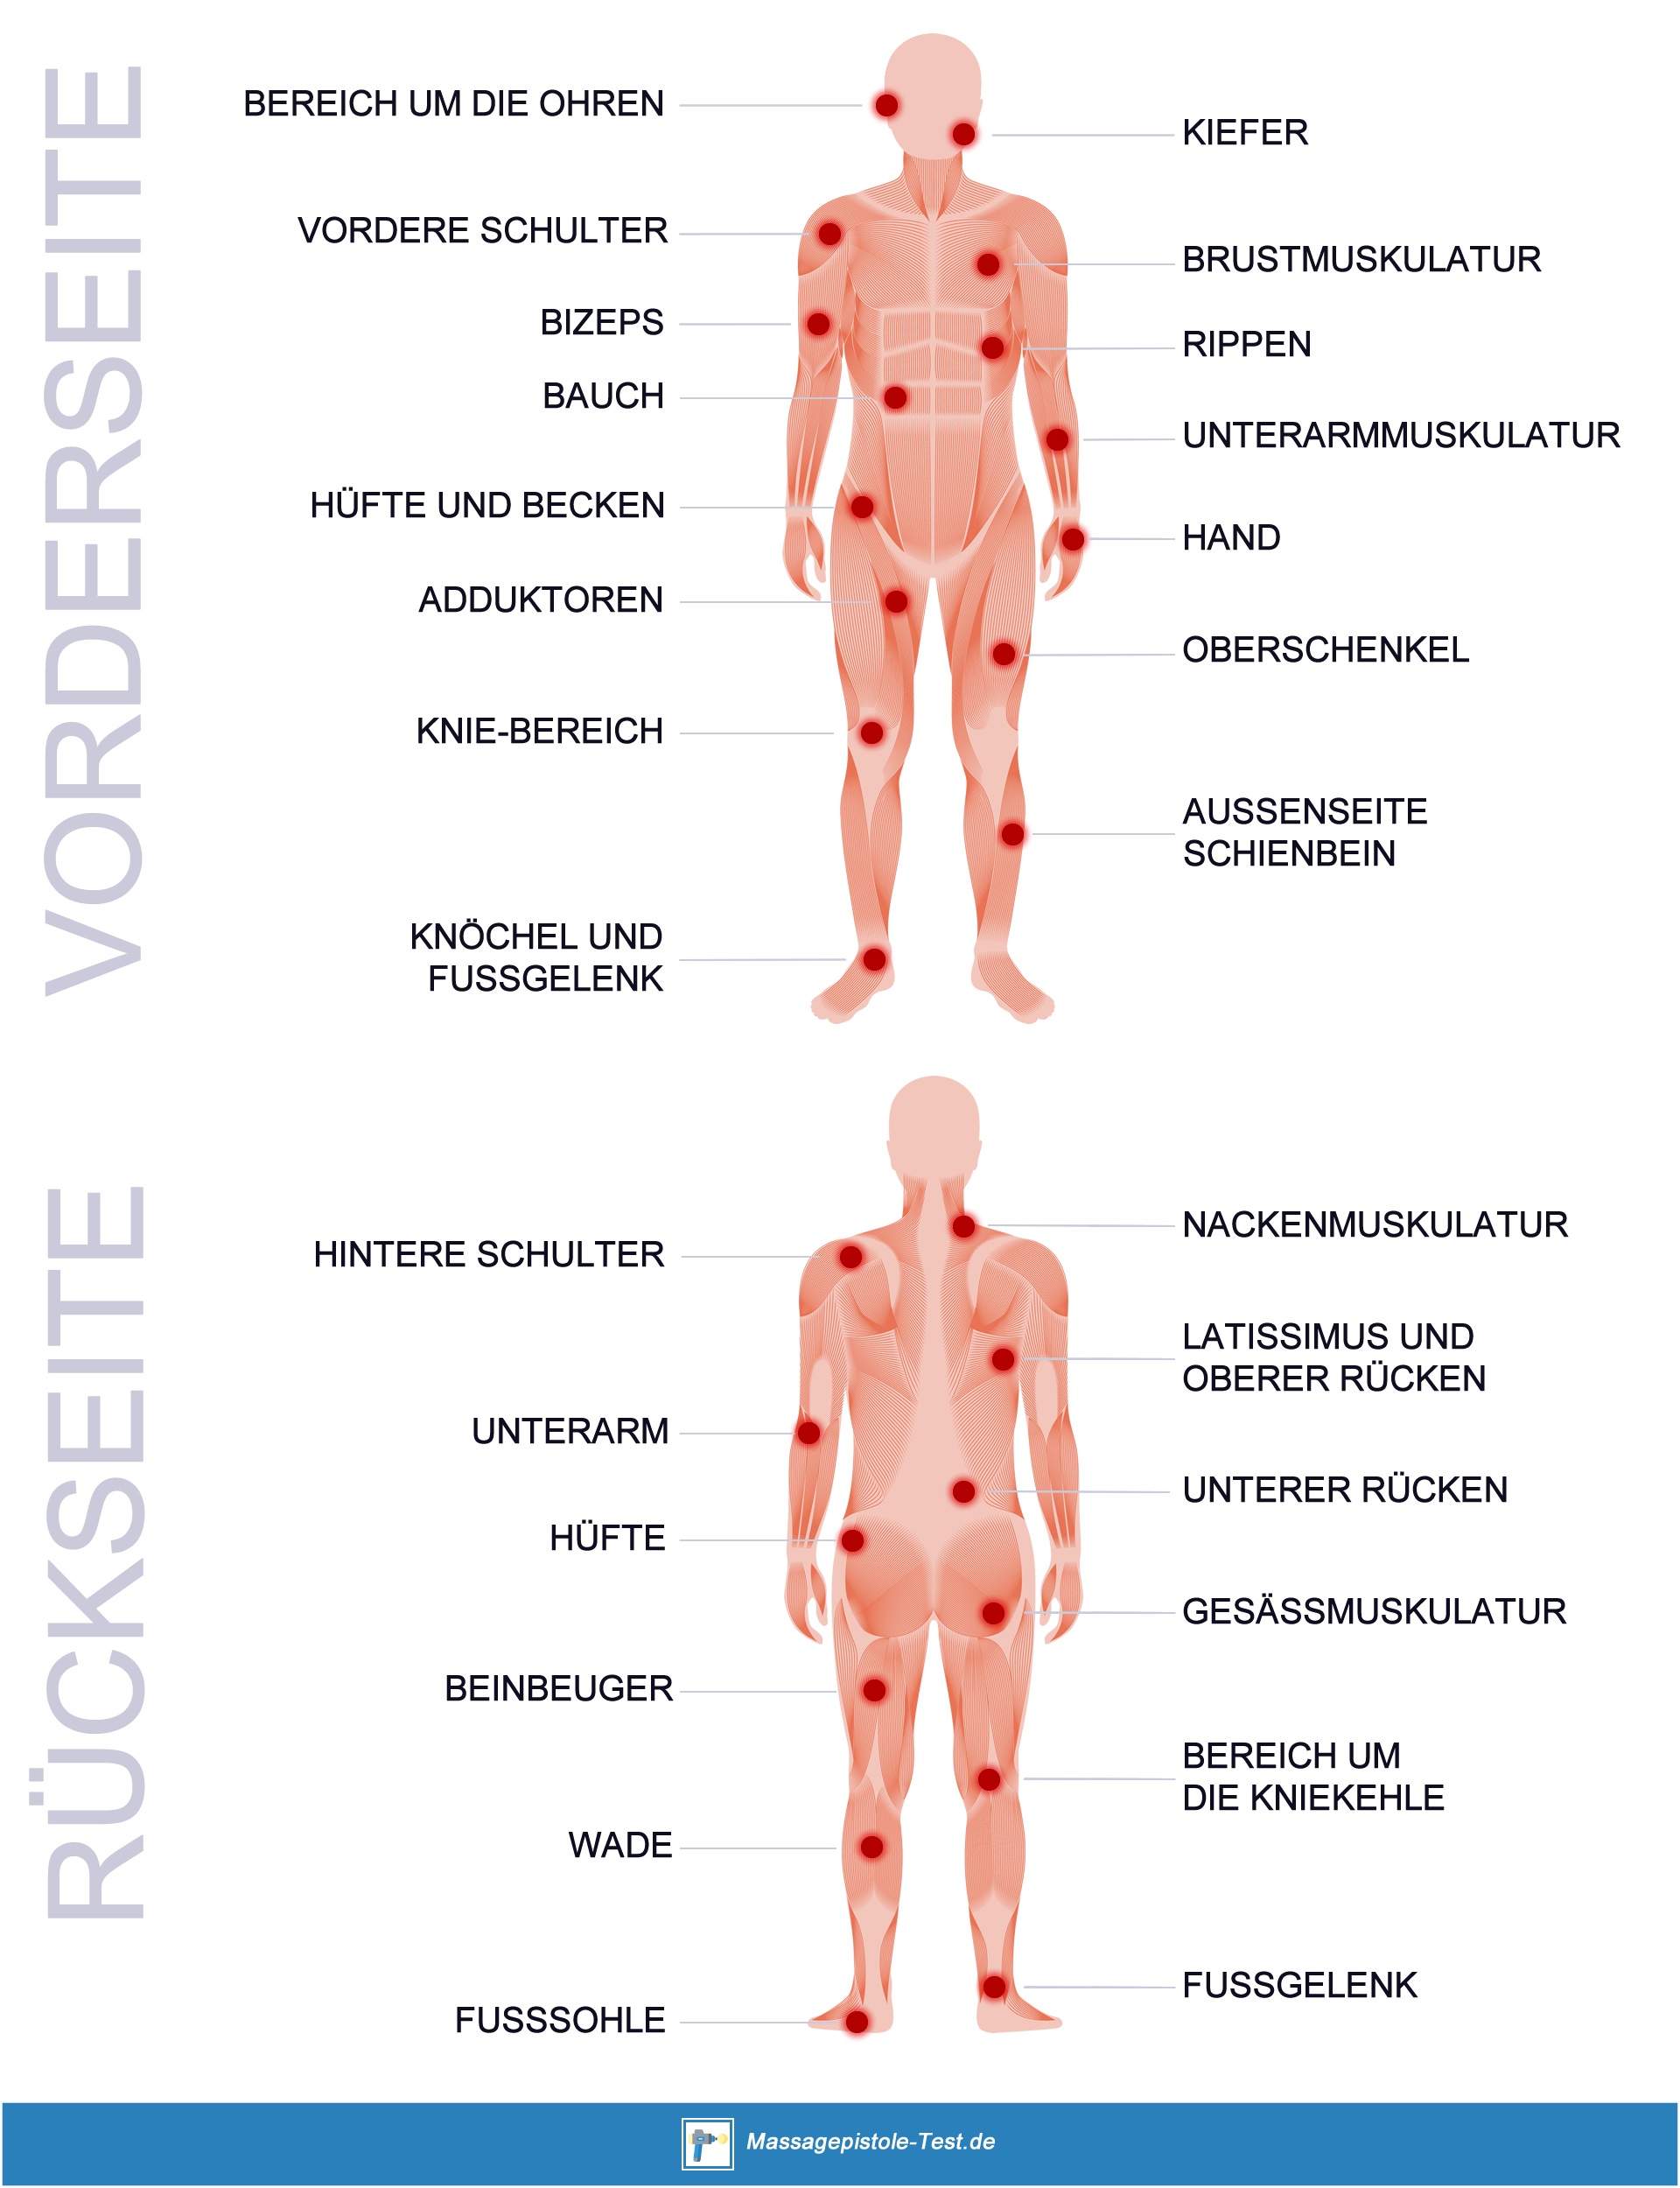 Darstellung häufiger Triggerpunkte an Vorder- und Rückseite des Körpers